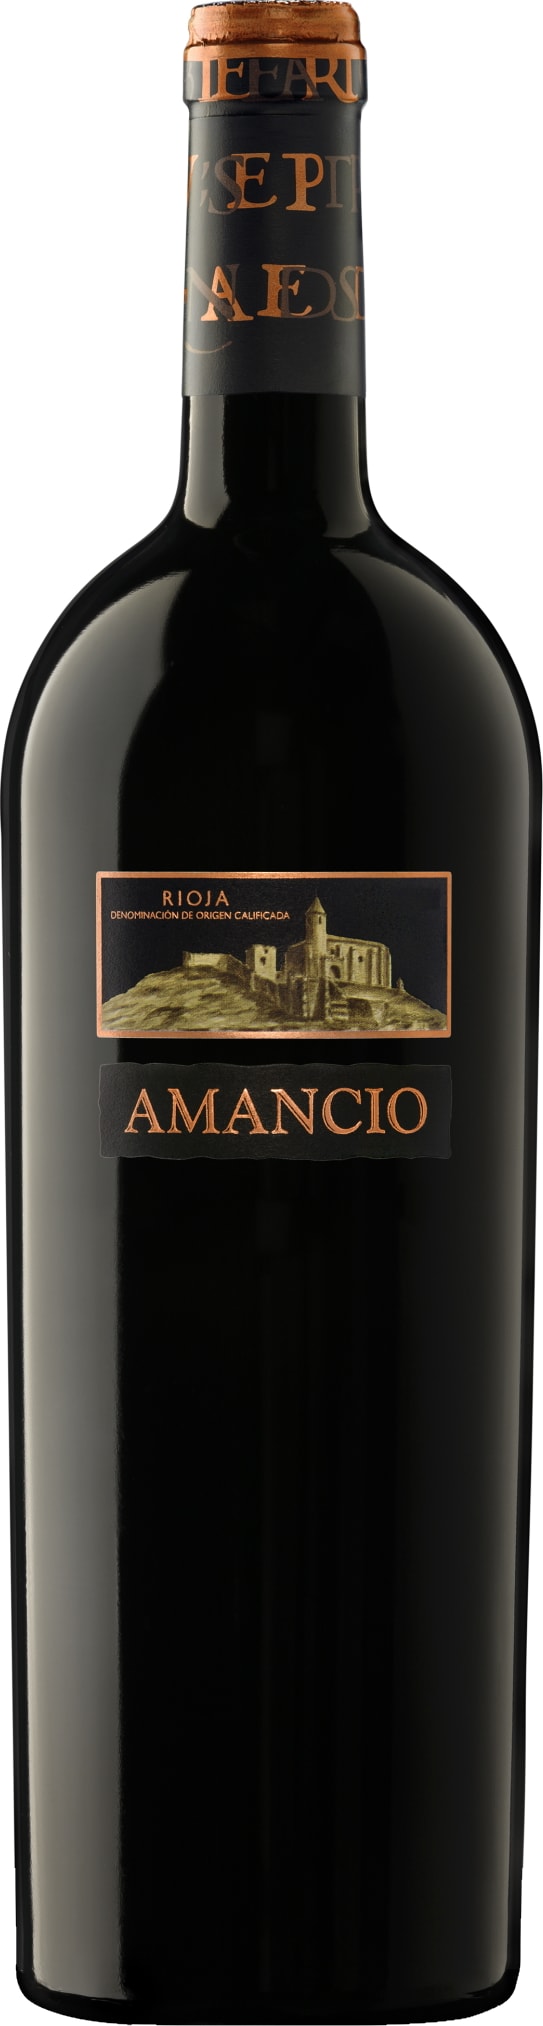 Vinedos Sierra Cantabria Rioja Amancio 2019 75cl - Buy Vinedos Sierra Cantabria Wines from GREAT WINES DIRECT wine shop